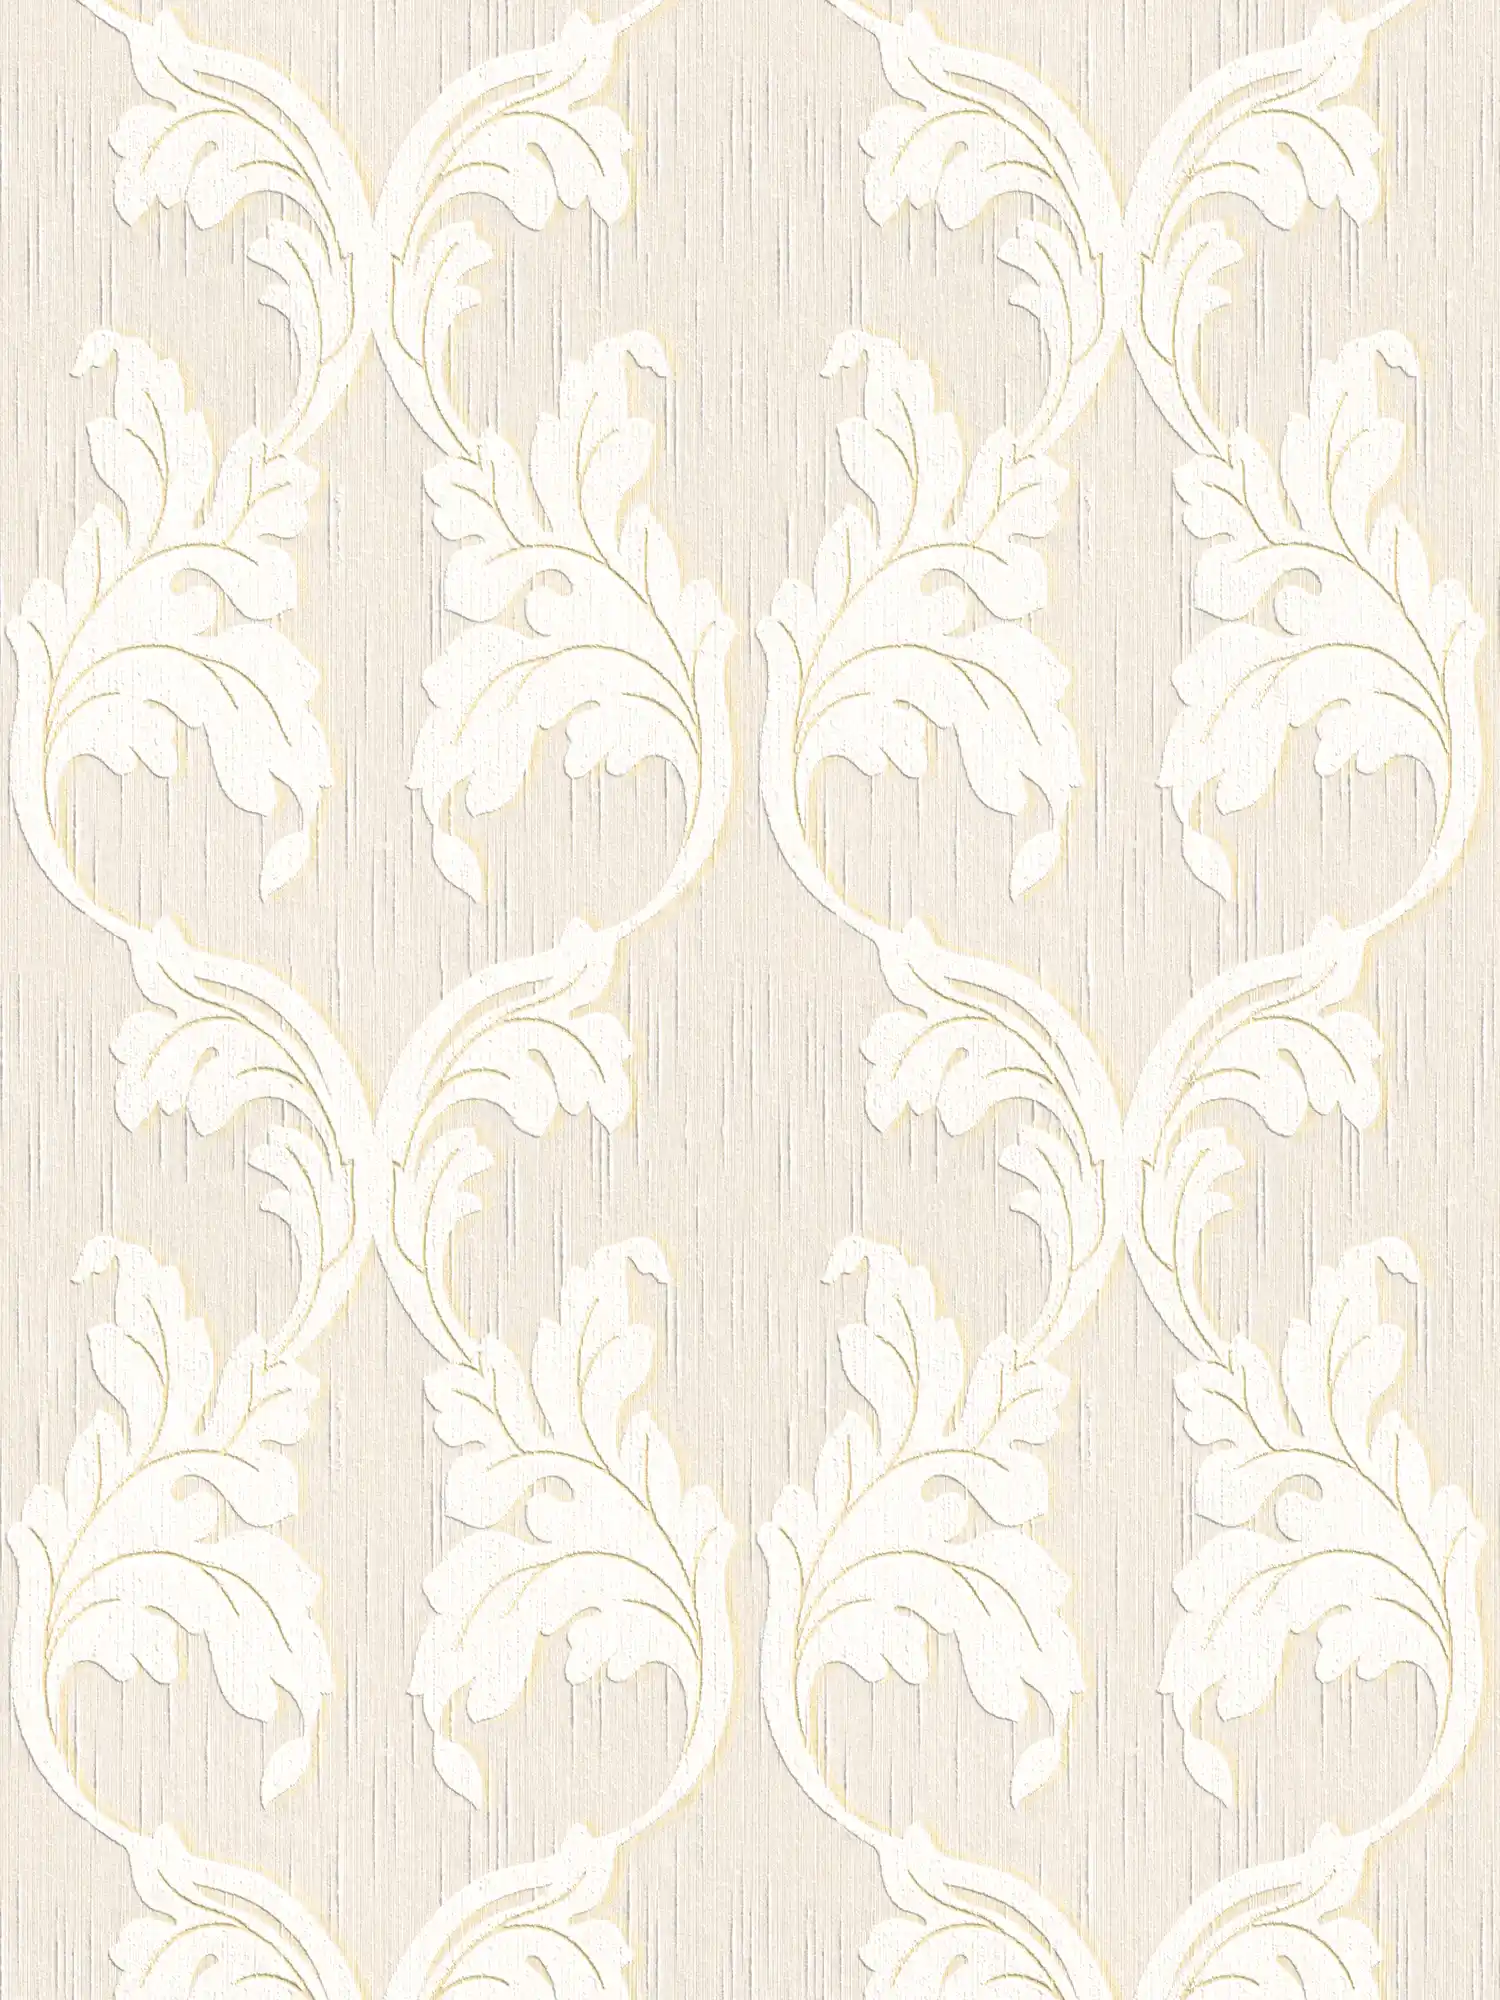 Hoogwaardig textielbehang met ornamentranken - beige, crème, goud
